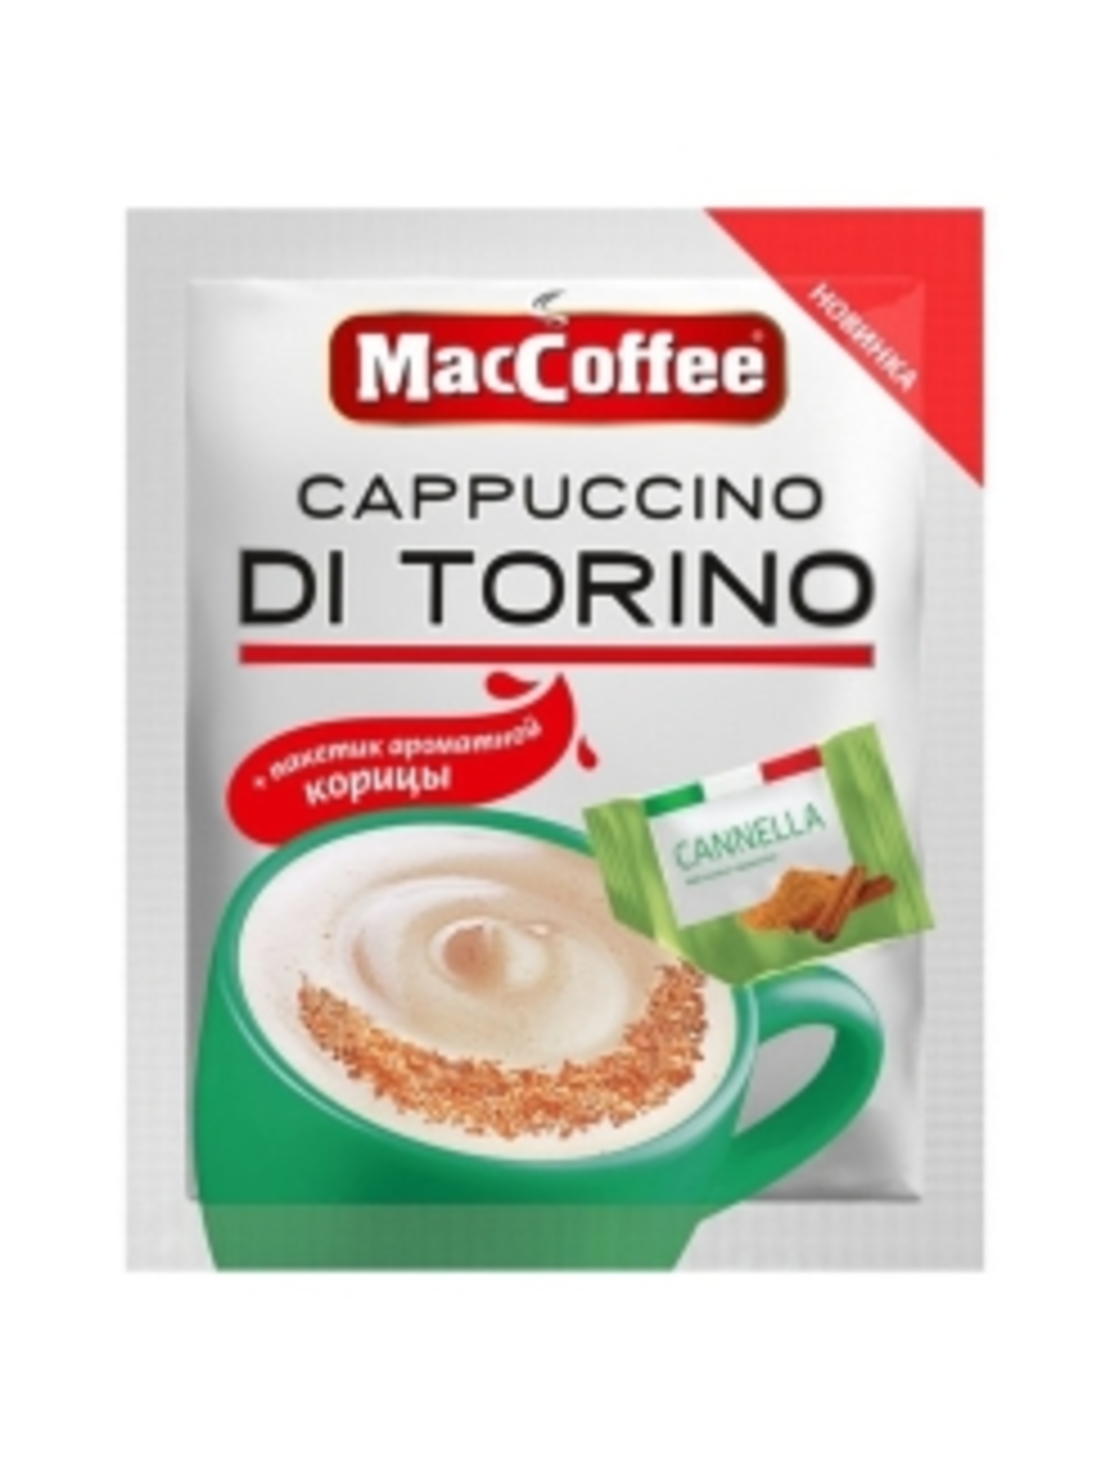 Маккофе ди торино. Кофе MACCOFFEE Cappuccino di Torino. Маккофе 3 в 1 капучино di Torino. Напиток кофейный растворимый MACCOFFEE Cappuccino di Torino. Кофе MACCOFFEE 3в1 капучино di Torino 25,5гр.